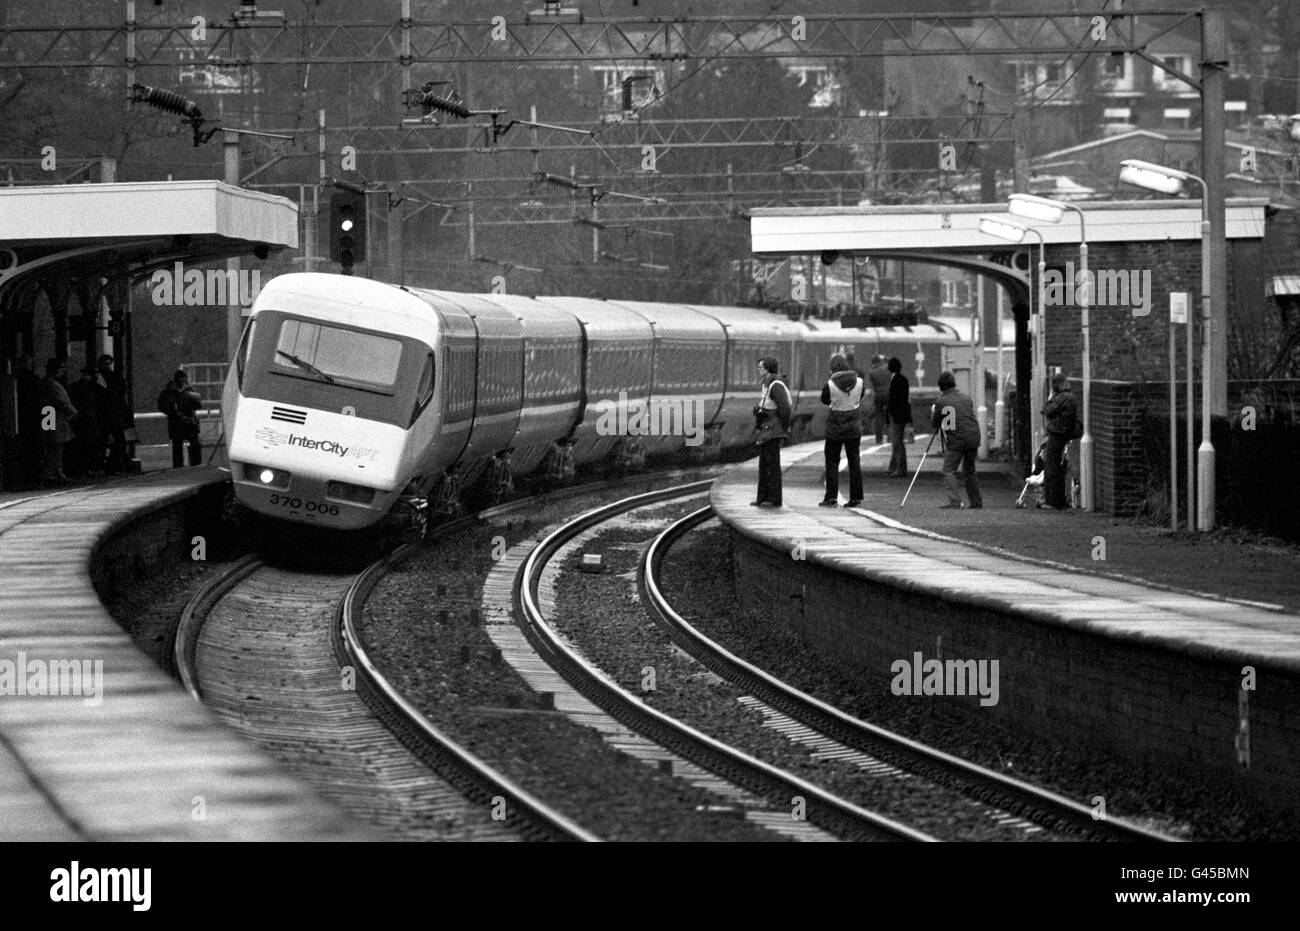 Der Advanced Passenger Train, der Kippzug von British Rail, der später vom Netz abgelehnt wurde. Es wurde angekündigt, dass die Hochgeschwindigkeits-Kippzüge im Rahmen eines 1.5-Milliarden-Programms wieder auf große London-Schottland-Dienste zurückfahren könnten. * 14/2/2001: Der erste elektrische Kippzug des Landes seit den 1980er Jahren wurde auf einer Strecke in der Nähe von Melton Mowbray probefahren. Es ist der erste von 55 Pendallino-Schnellzügen mit acht und neun Wagen, die Virgin Railways auf der Hauptstrecke der Westküste zwischen London Euston, Manchester und Schottland betreiben wird. Vor der 1.25 Milliarden Flotte von Zügen, in der Lage, Geschwindigkeiten von bis Stockfoto